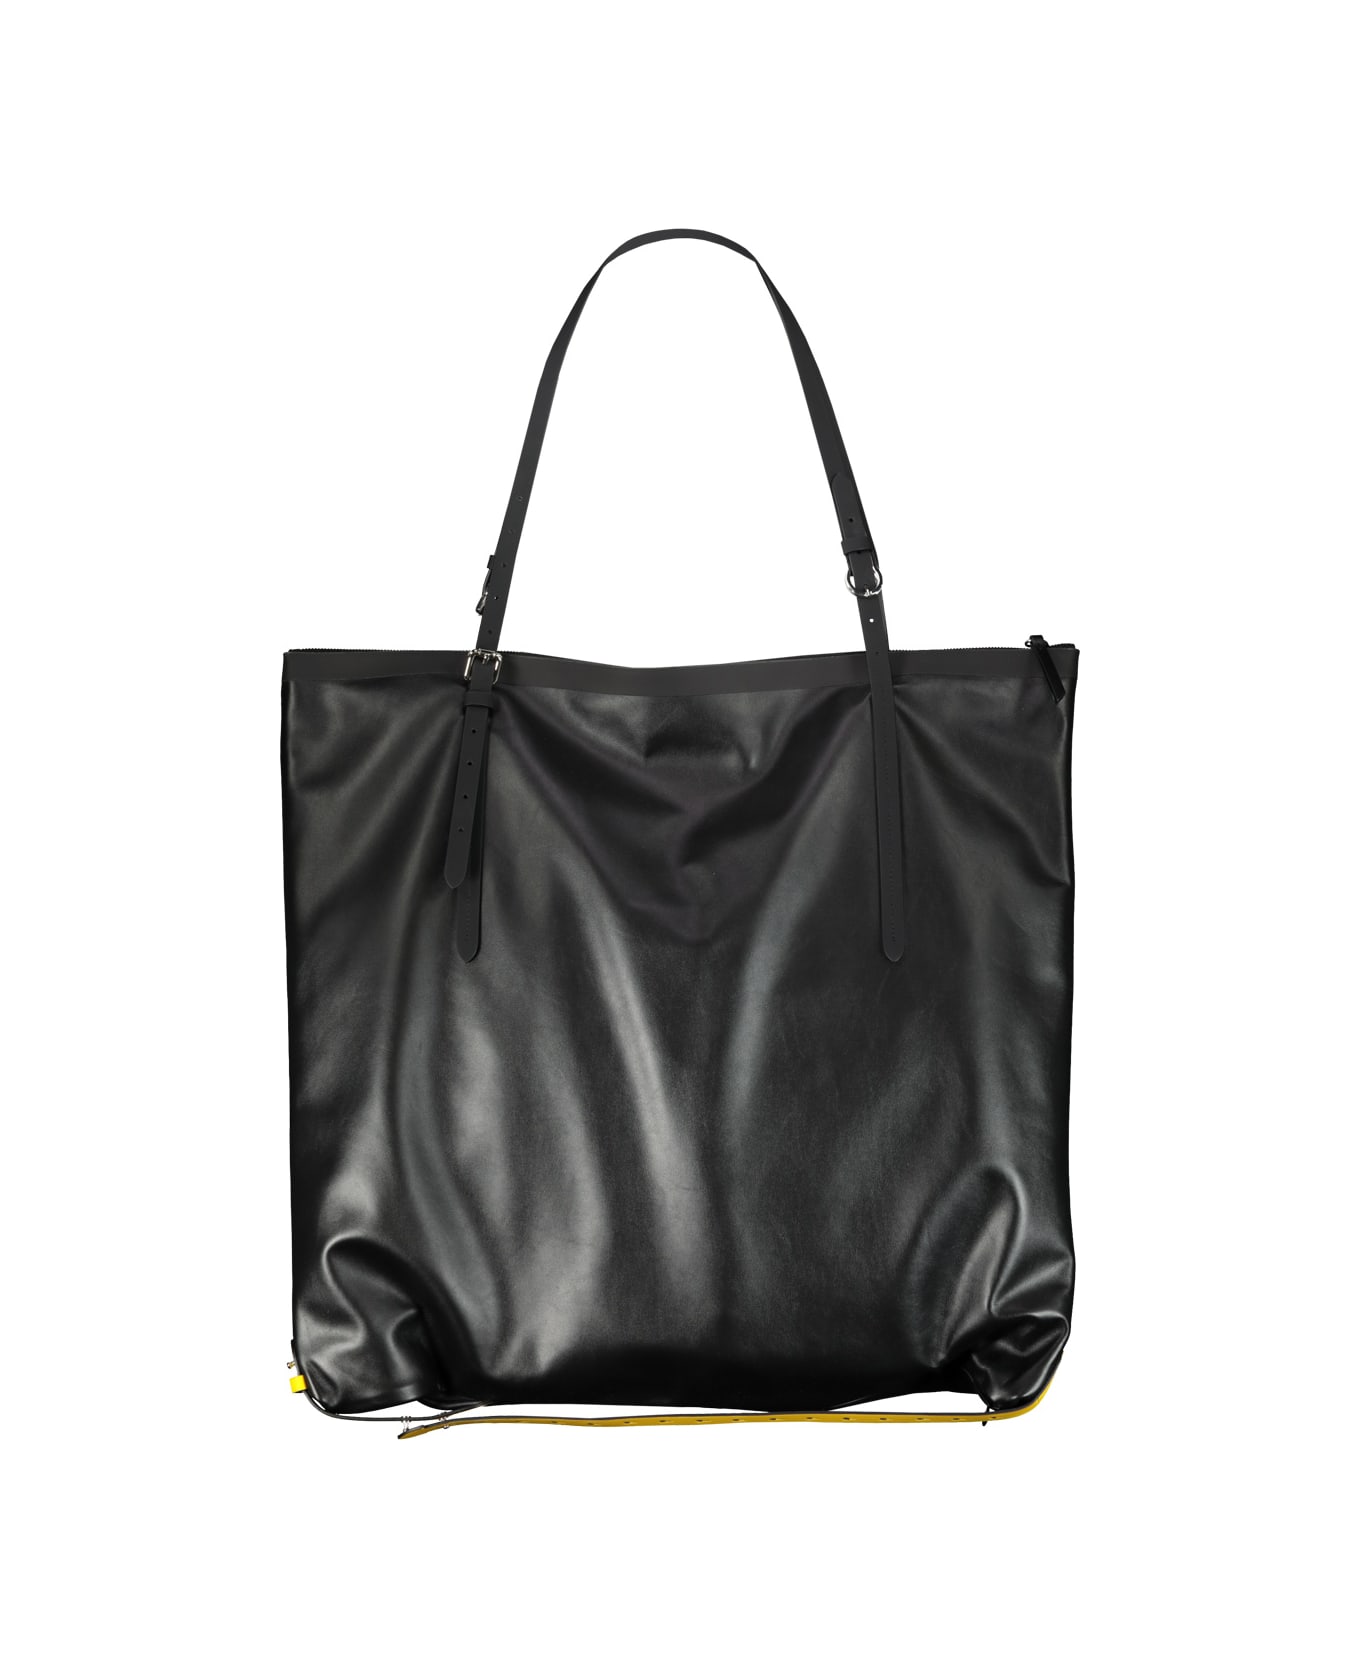 Maison Margiela Large Leather Bag